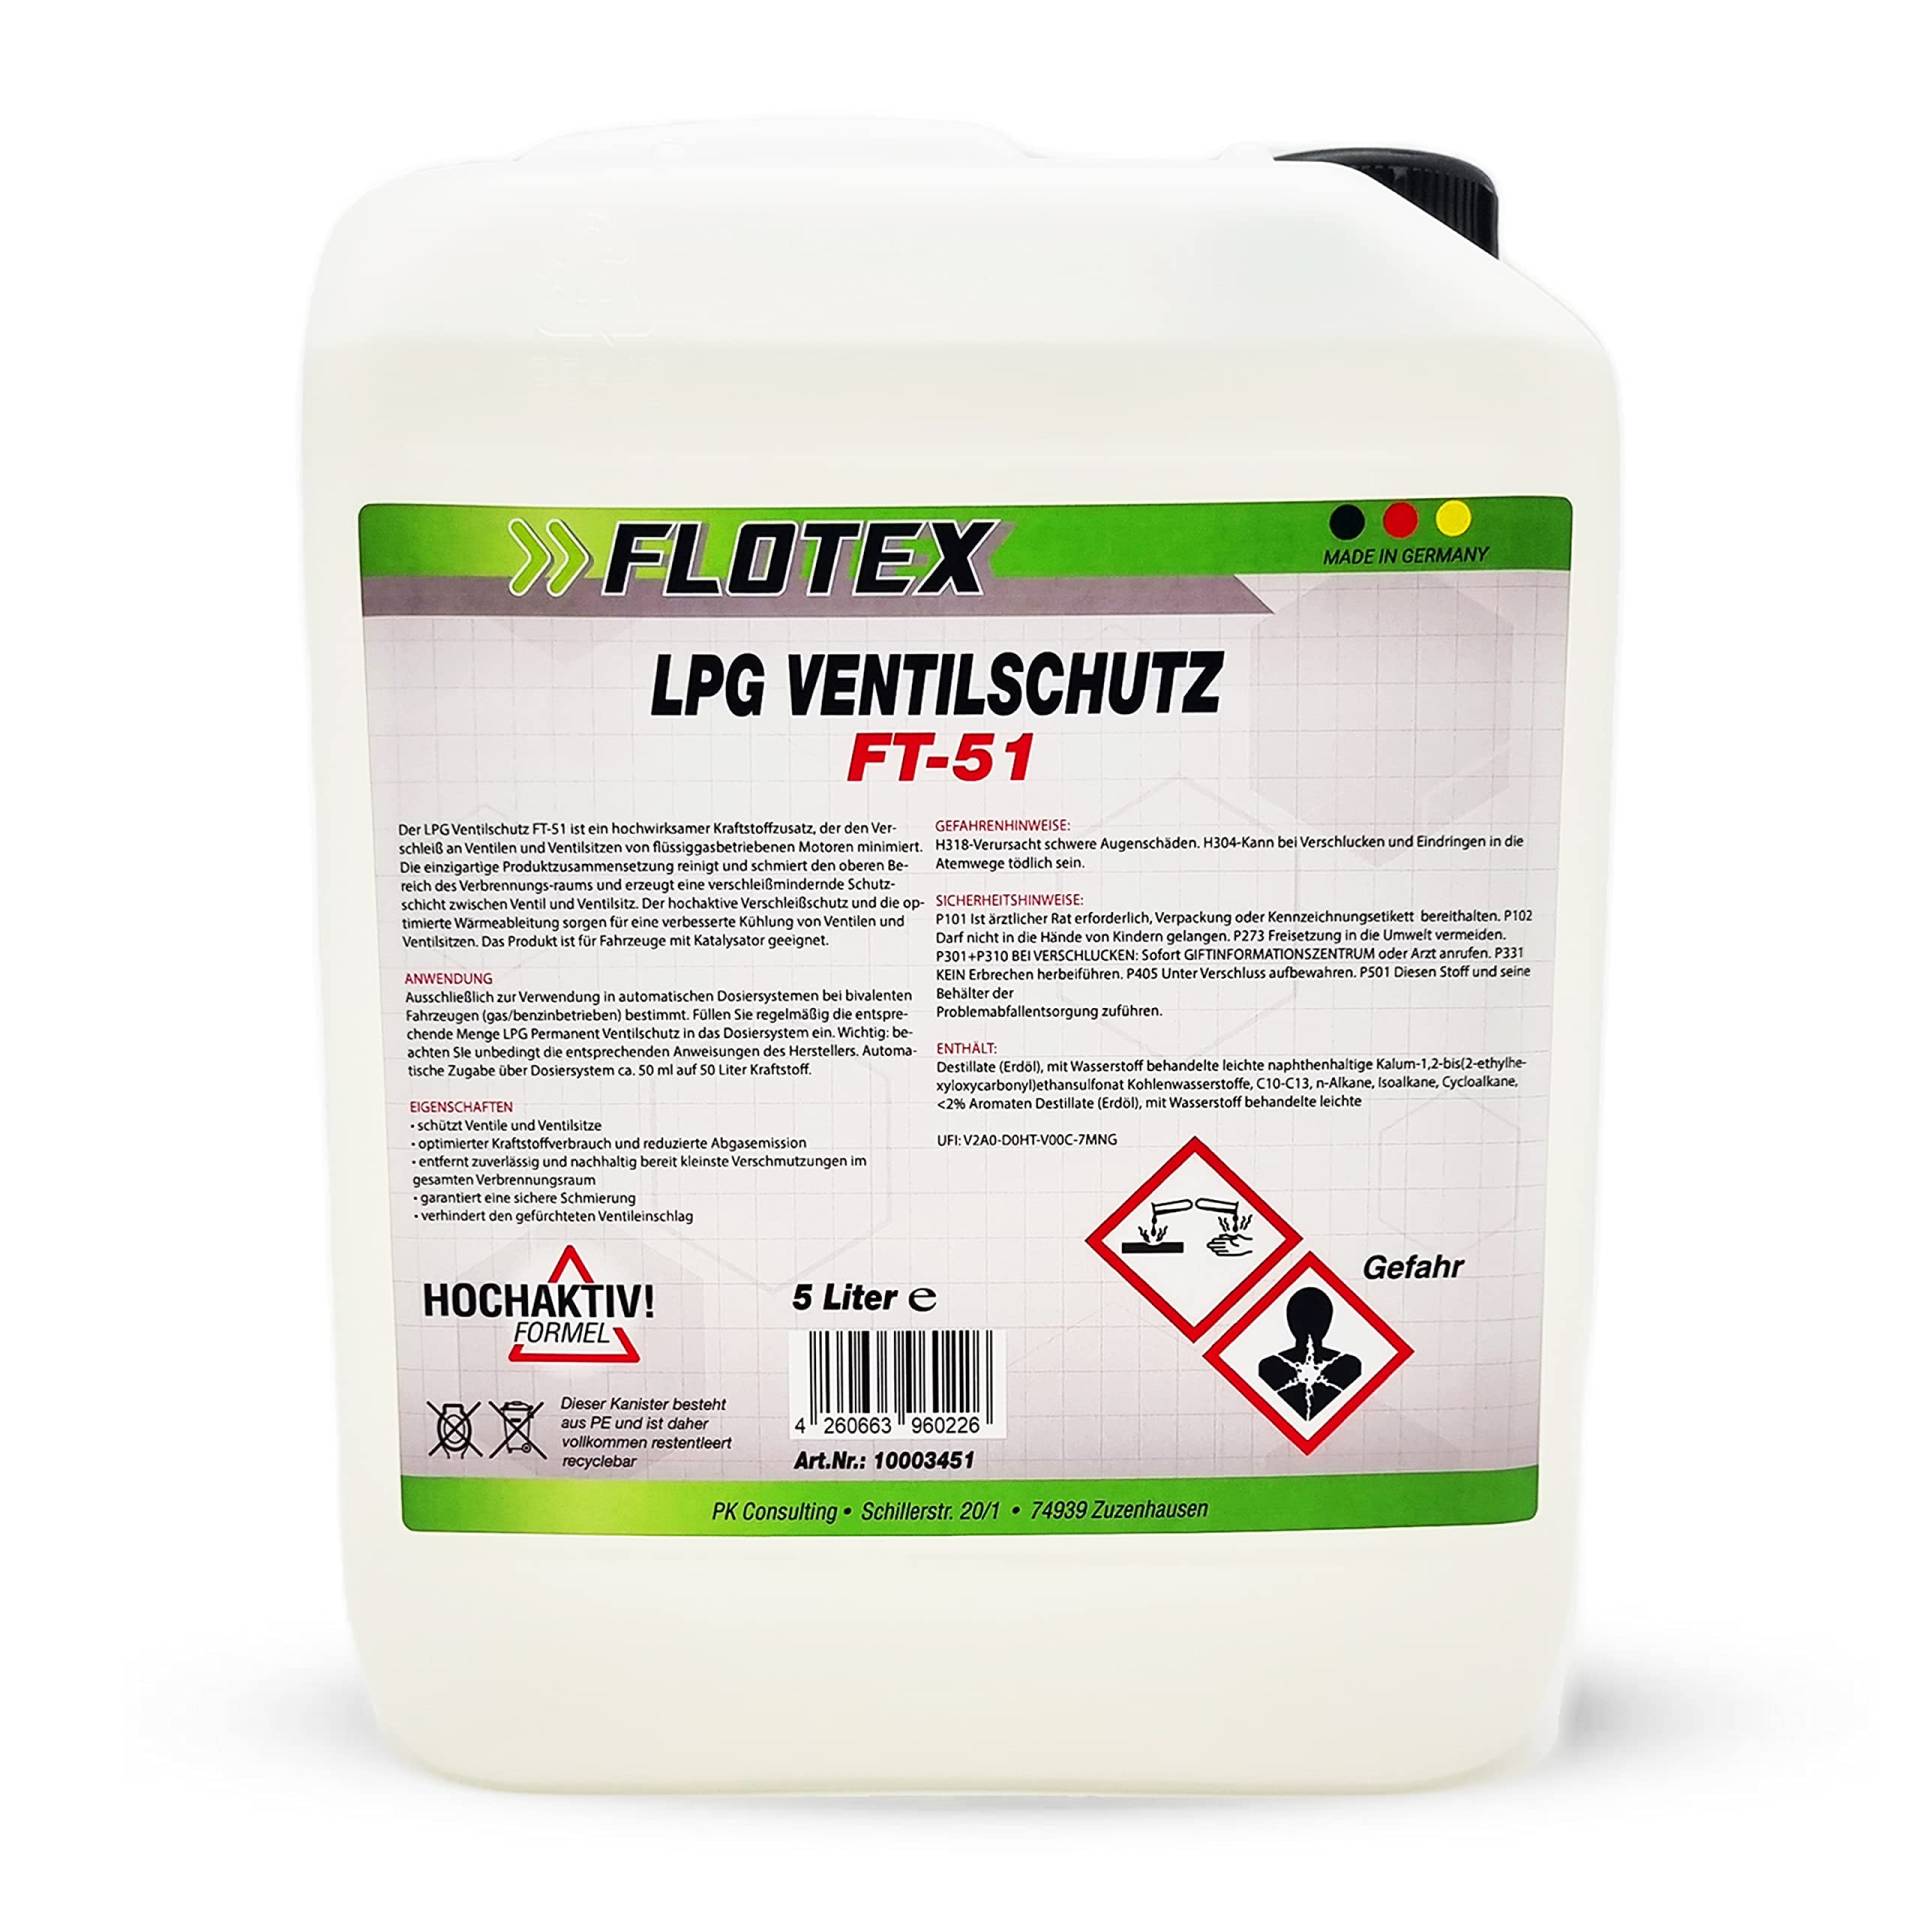 Flotex Permanent LPG Ventilschutz, 5L Additiv Gas Ventil Schutz von Flotex